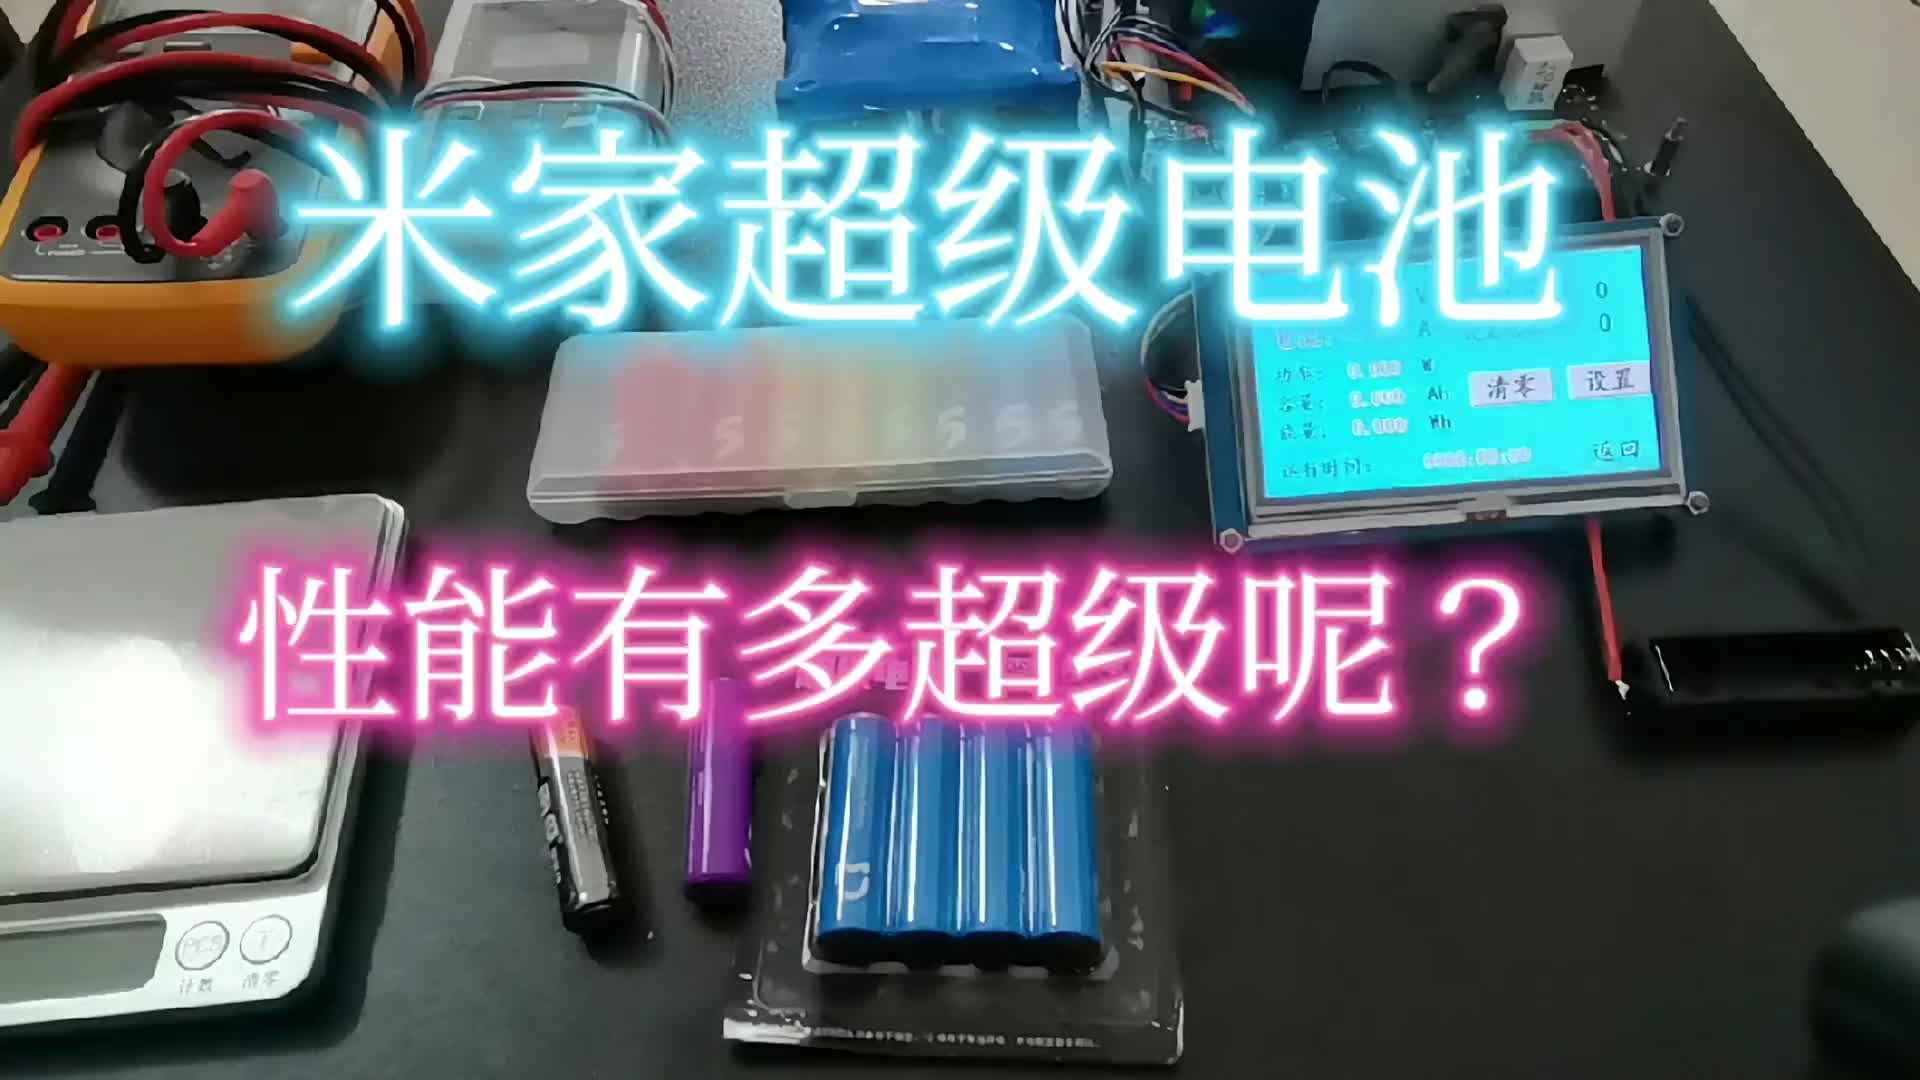 00007 米家超级电池，性能有多超级呢？ #米家超级电池 #锂铁电池 #南孚电池 #小米彩虹电池 #干电池 